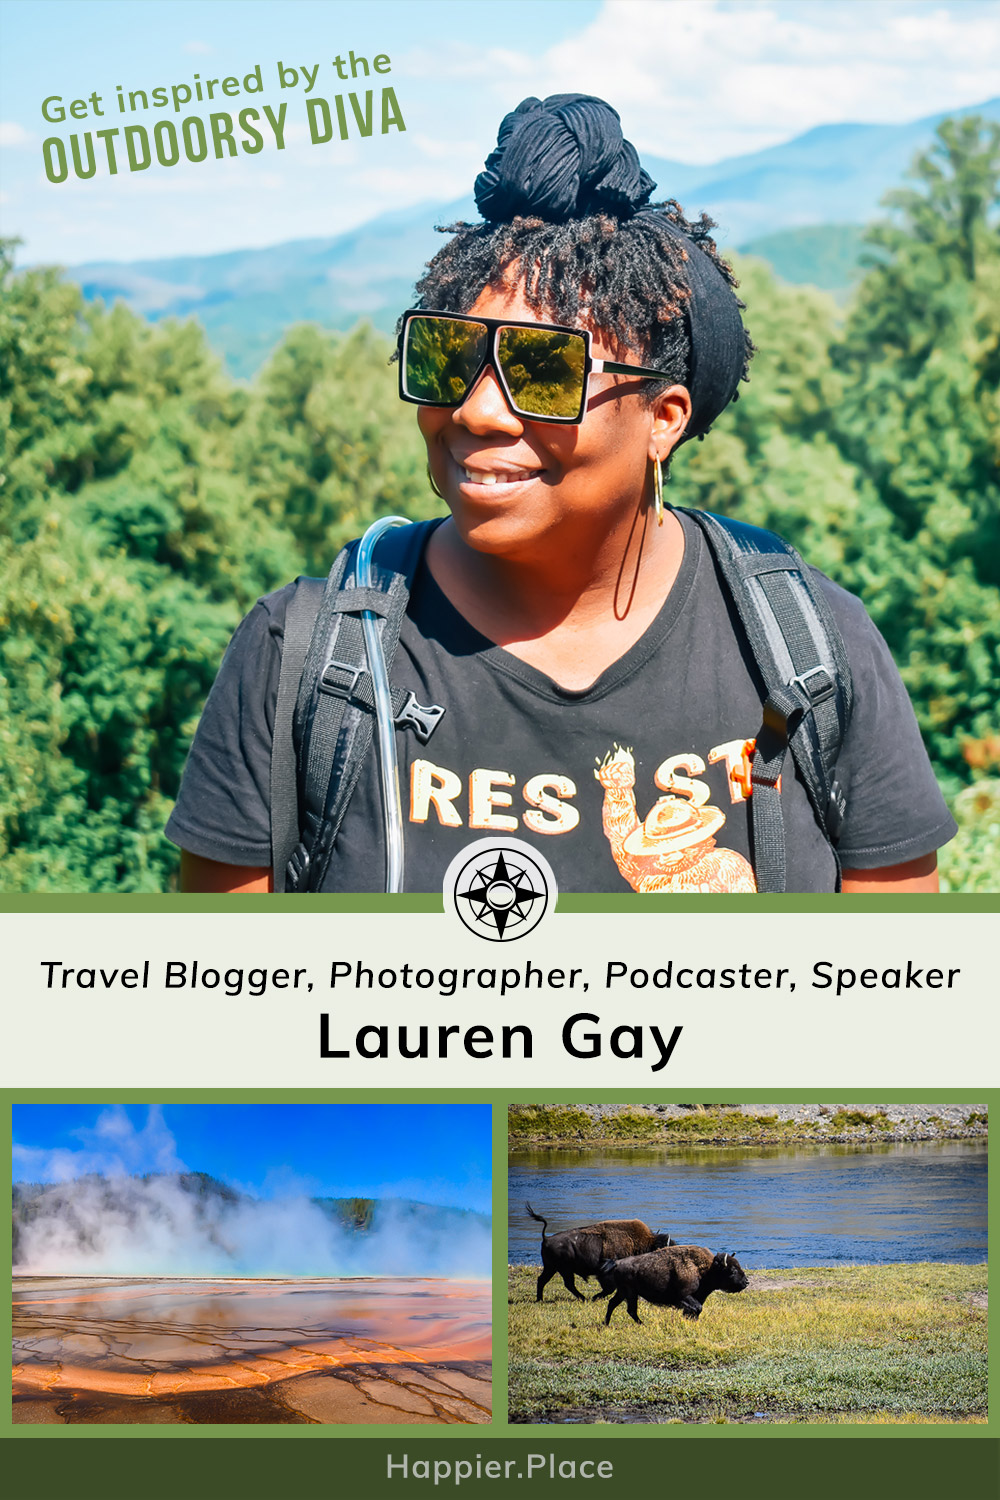 Lauren Gay, Outdoorsy Diva, Travel Blogger, Photographer, Podcaster, Speaker